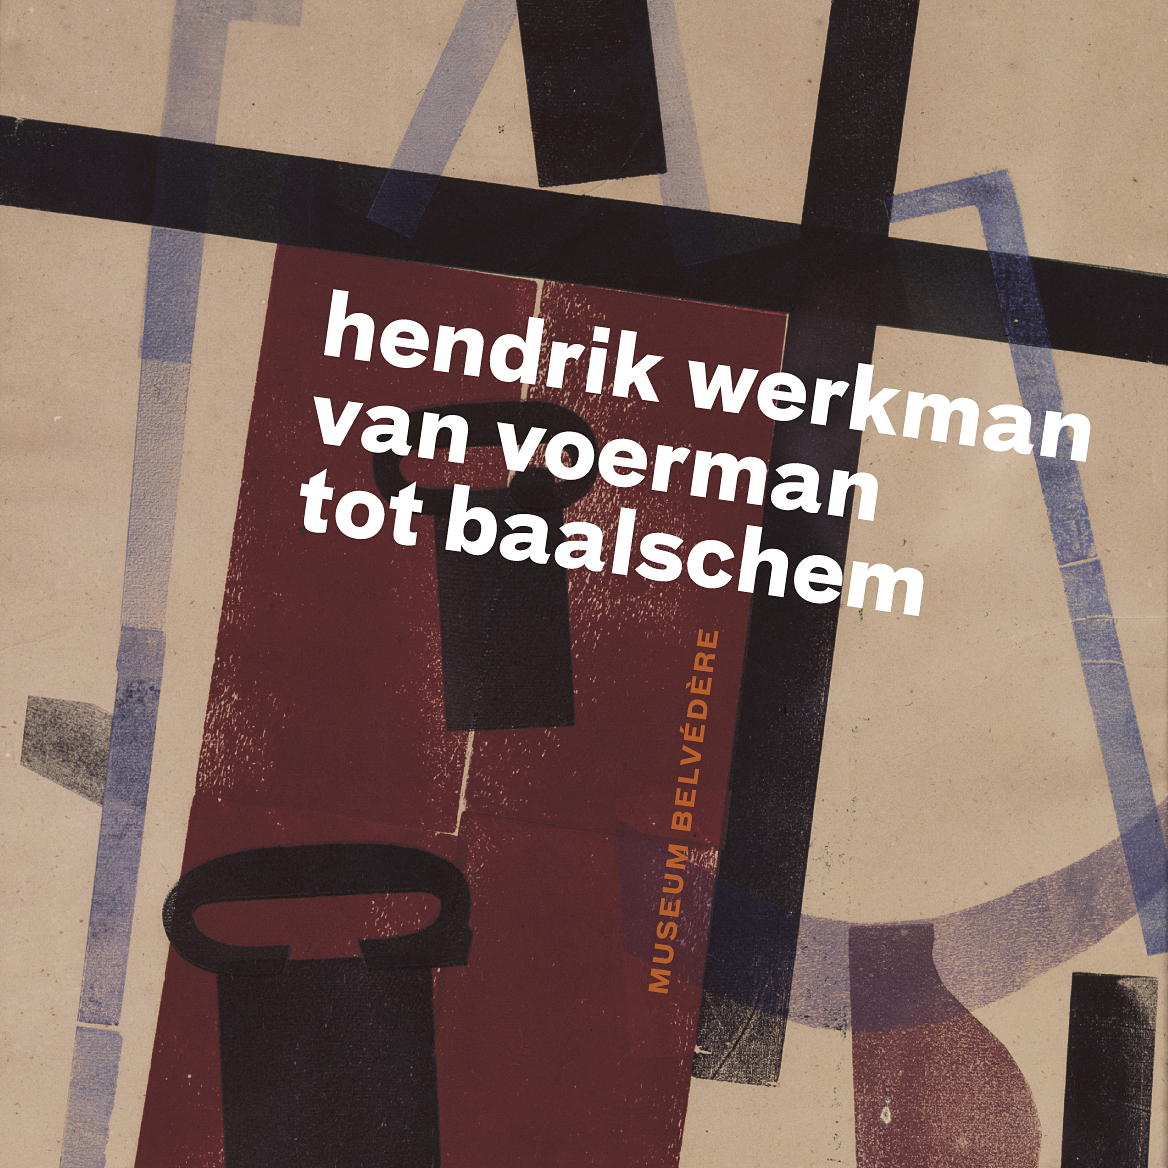 Hendrik Werkman